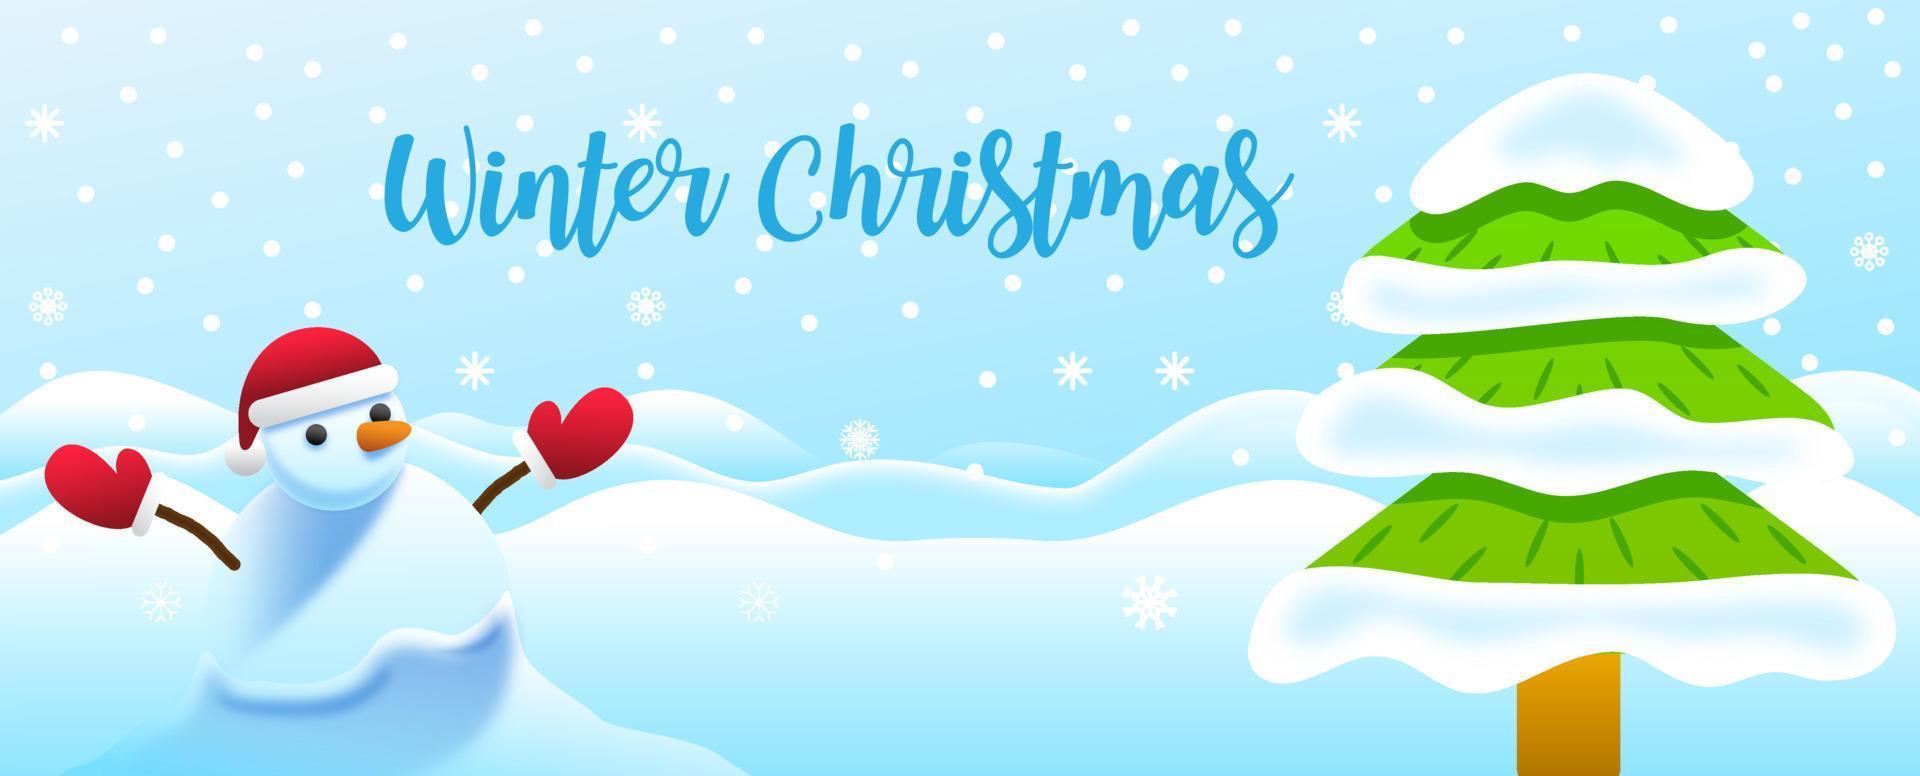 närbild en snögubbe bär en santa handske och hatt i landskap snö faller med tall träd och vinter- jul text. jul hälsning kort i vektor och webb baner design.